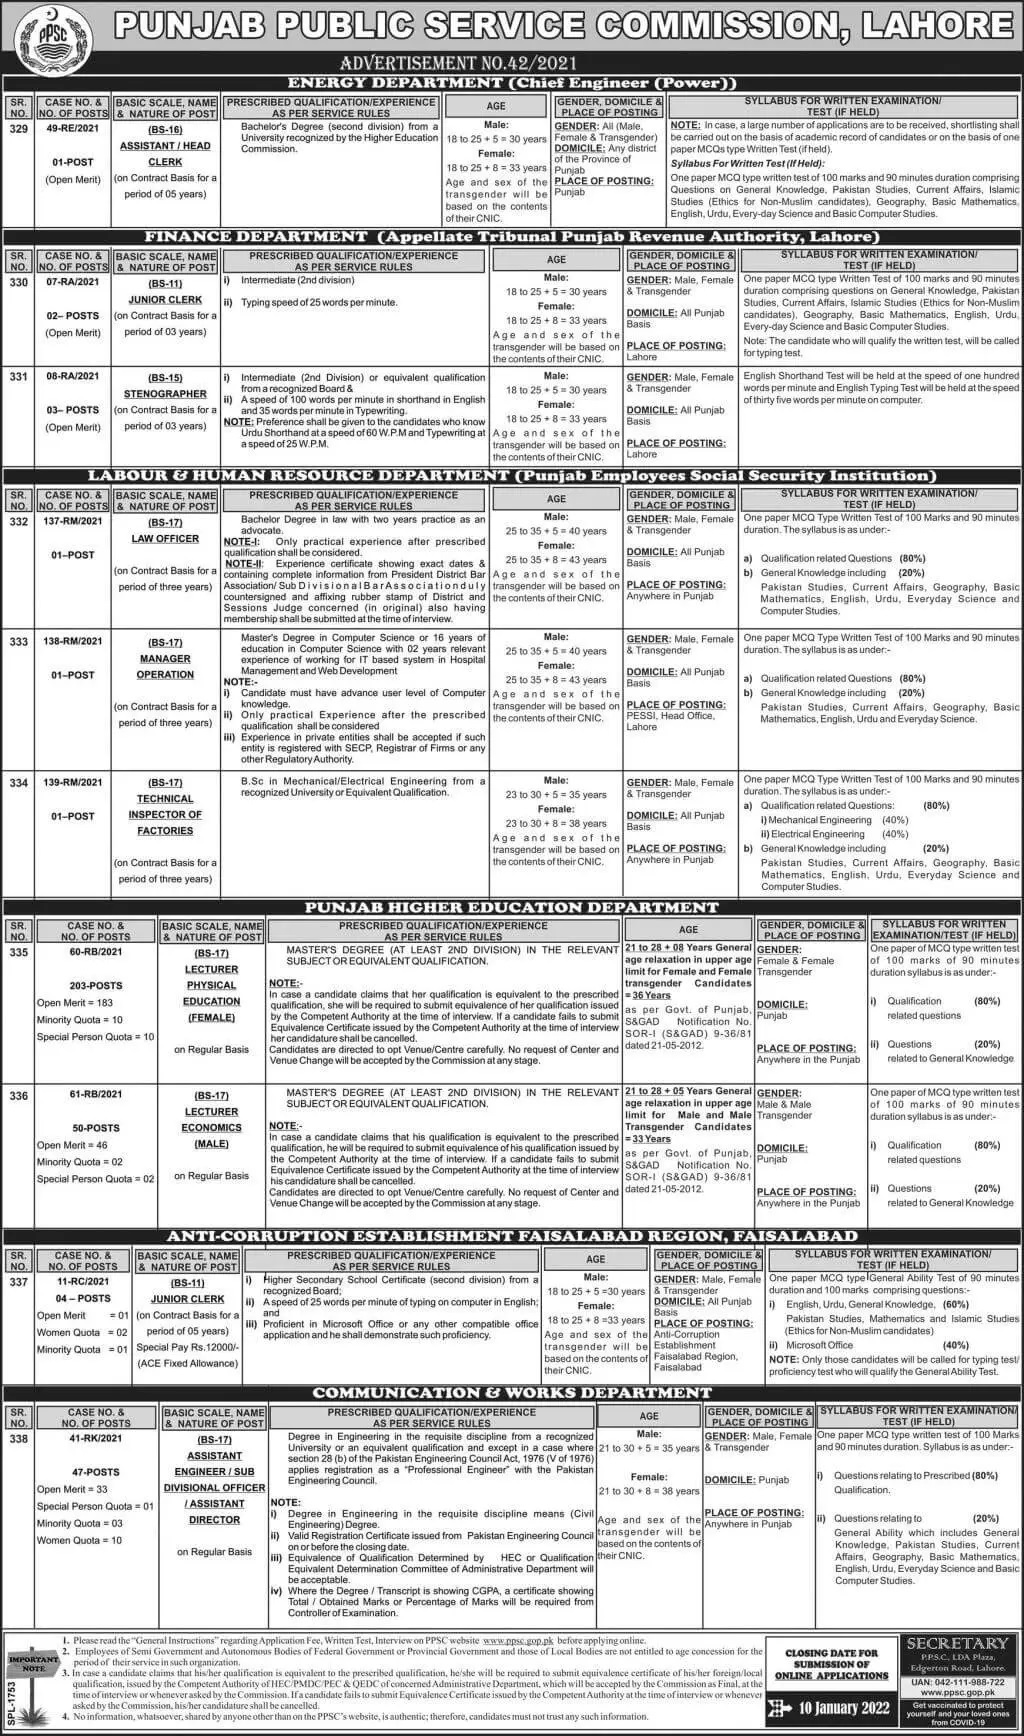 PPSC Jobs 2021 Advertisement Punjab Public Service Commission